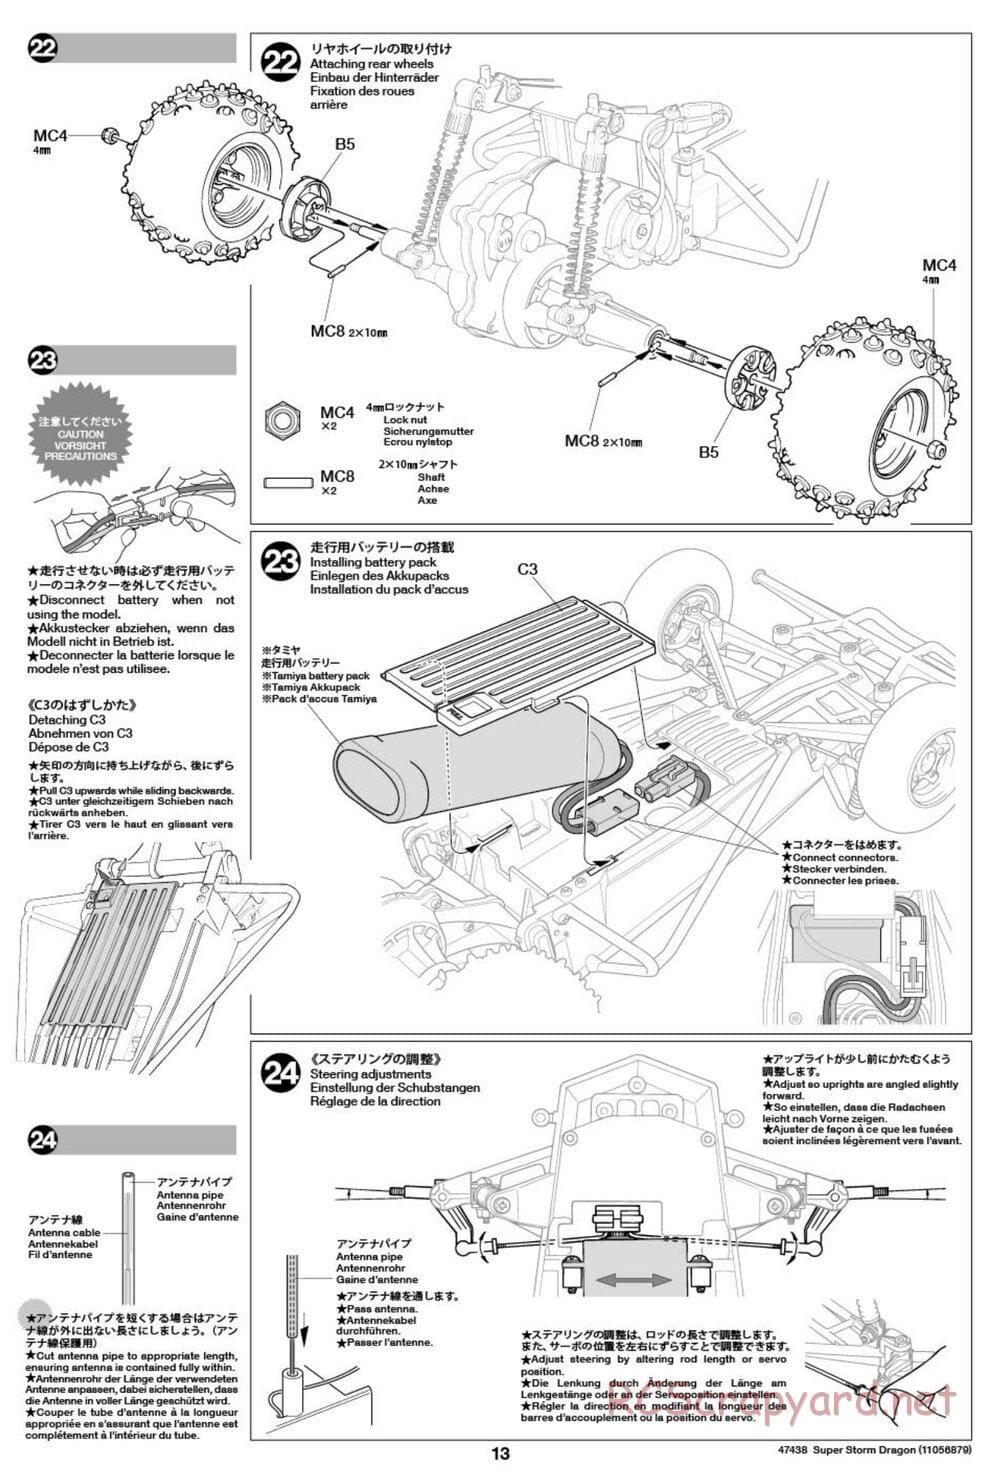 Tamiya - Super Storm Dragon Chassis - Manual - Page 13